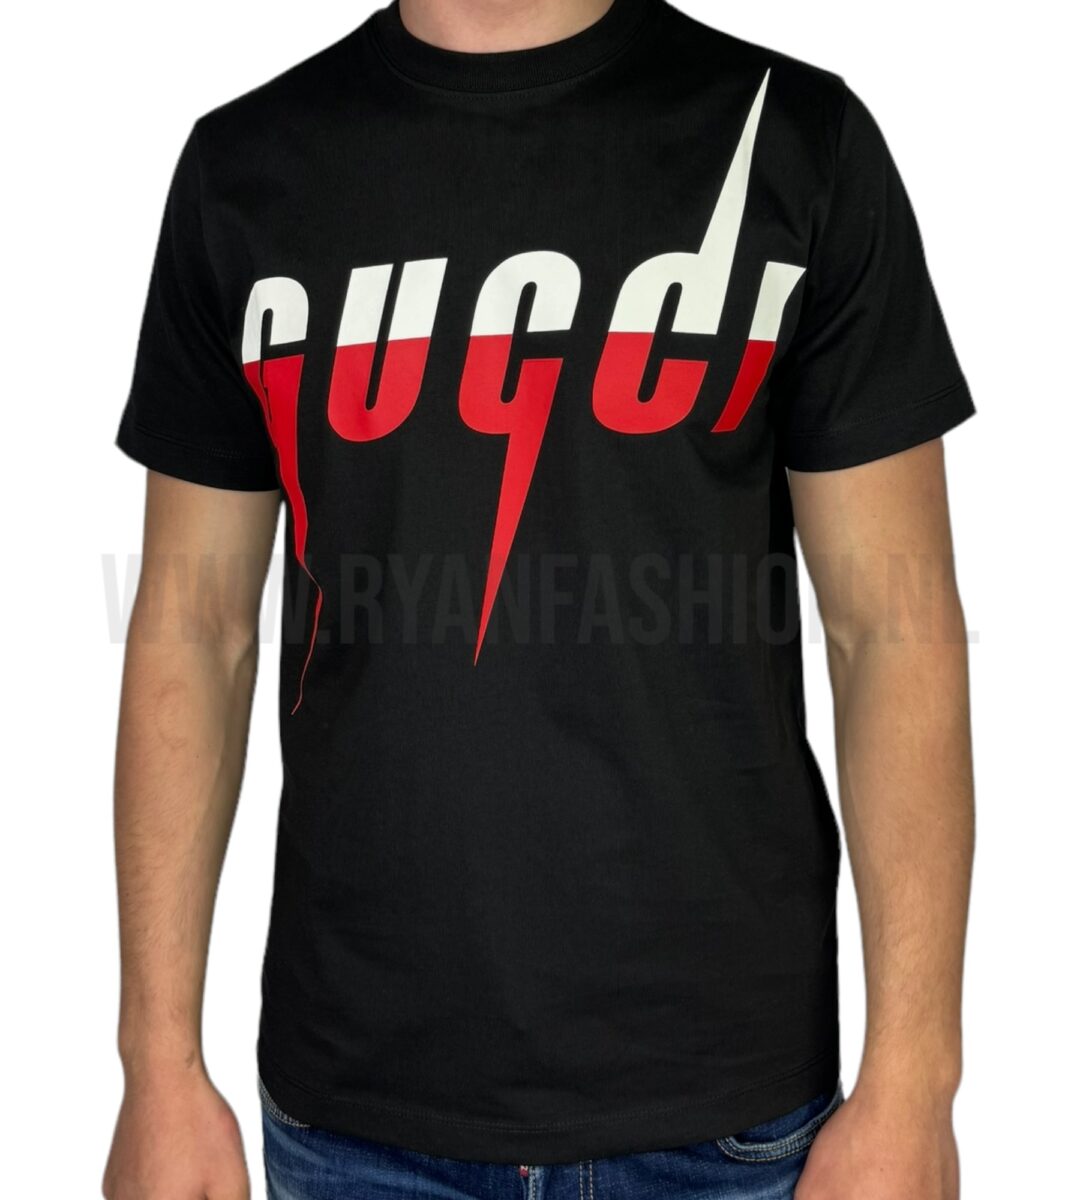 Gucci Blade Print T-Shirt Black